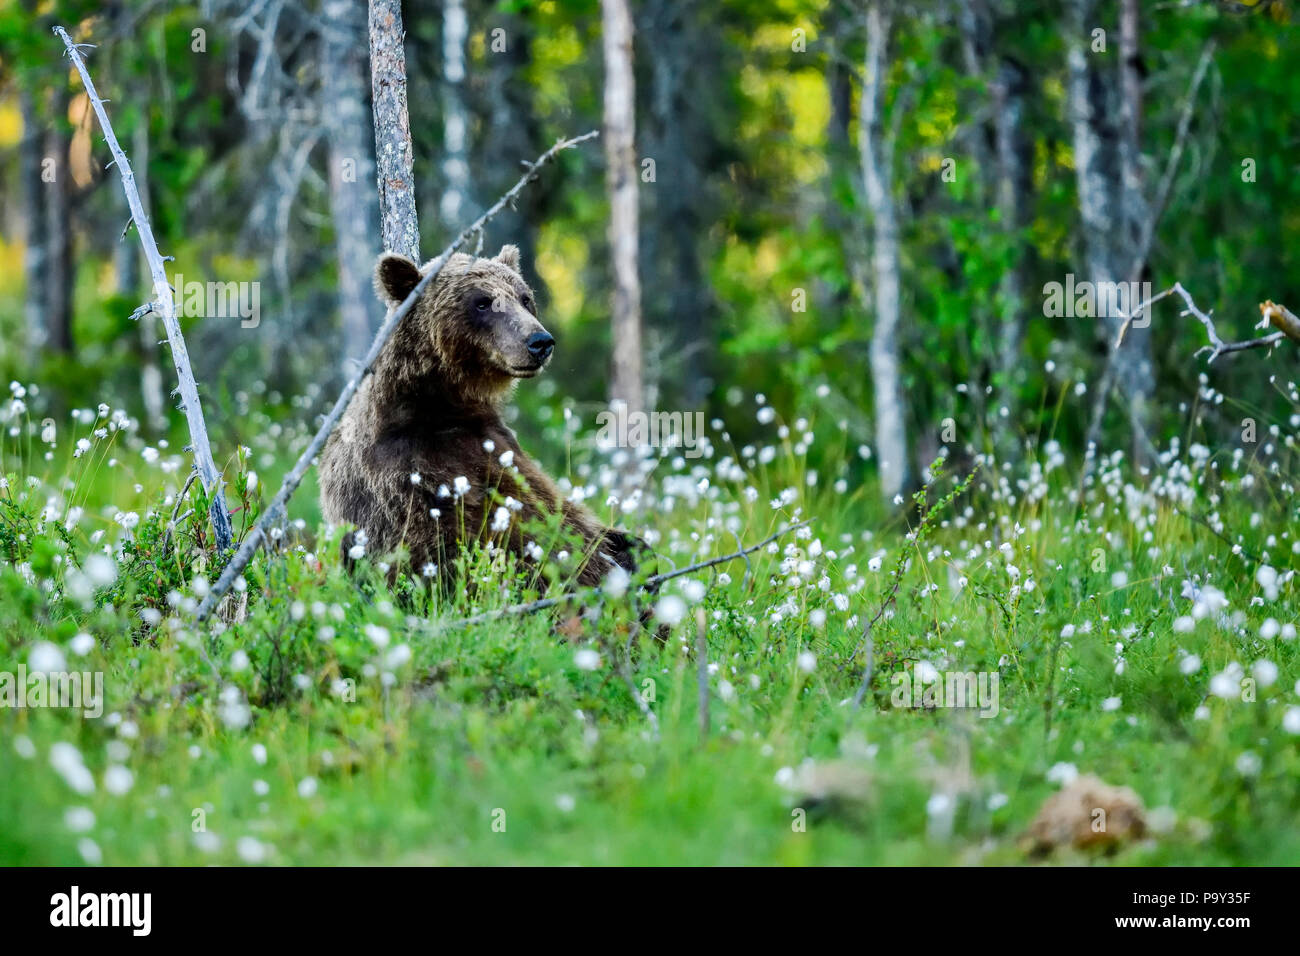 Brauner Bär nimmt einige Zeit, um sich auszuruhen und zu reflektieren, was Tagsüber passiert ist. Stockfoto